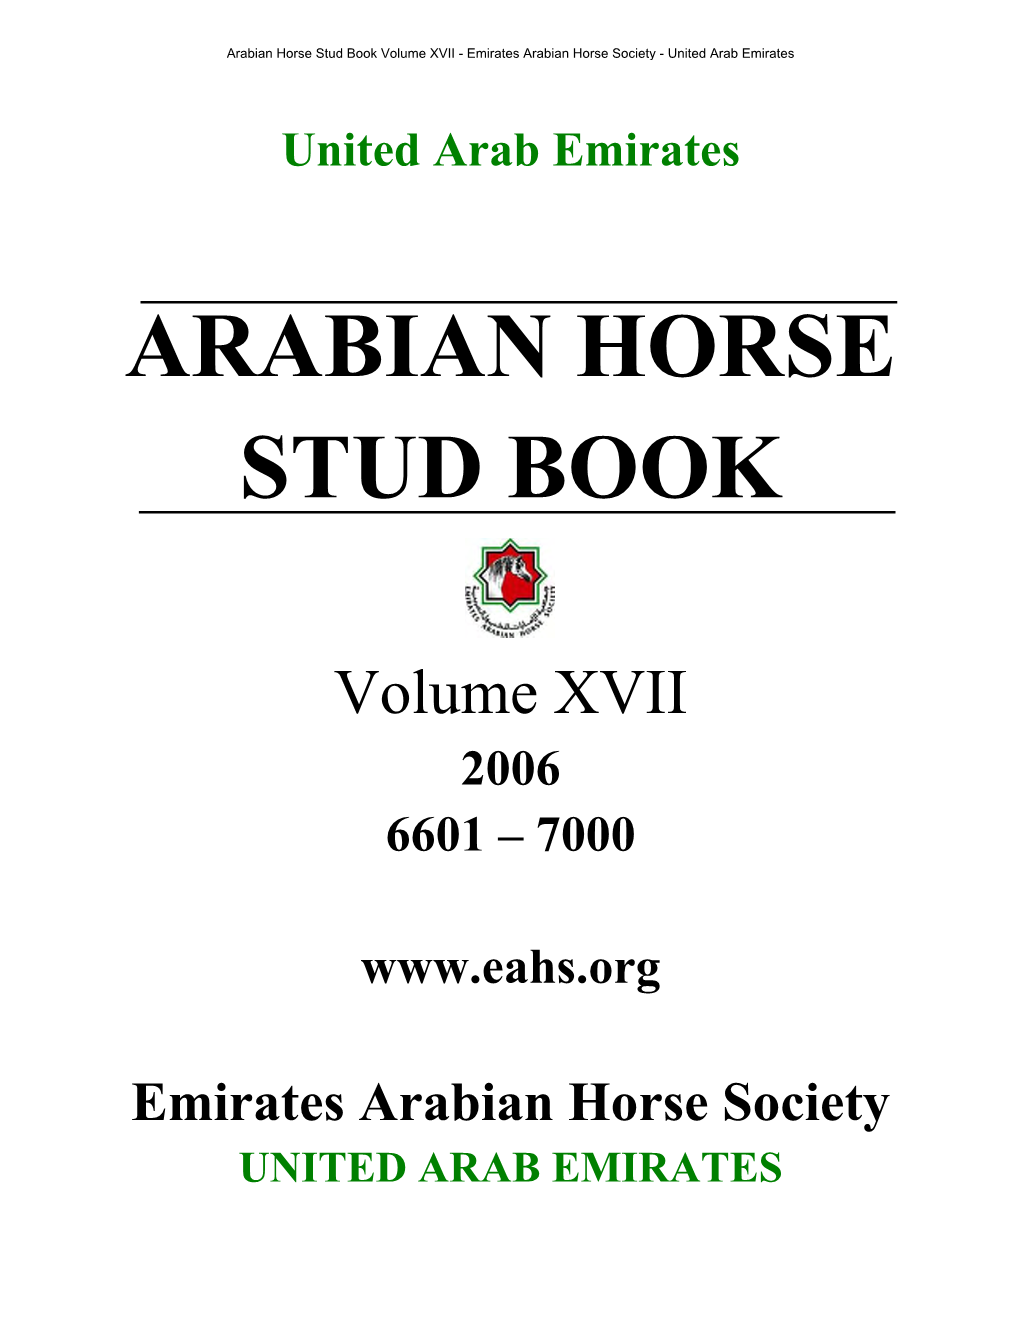 UAE Arabian Horse St